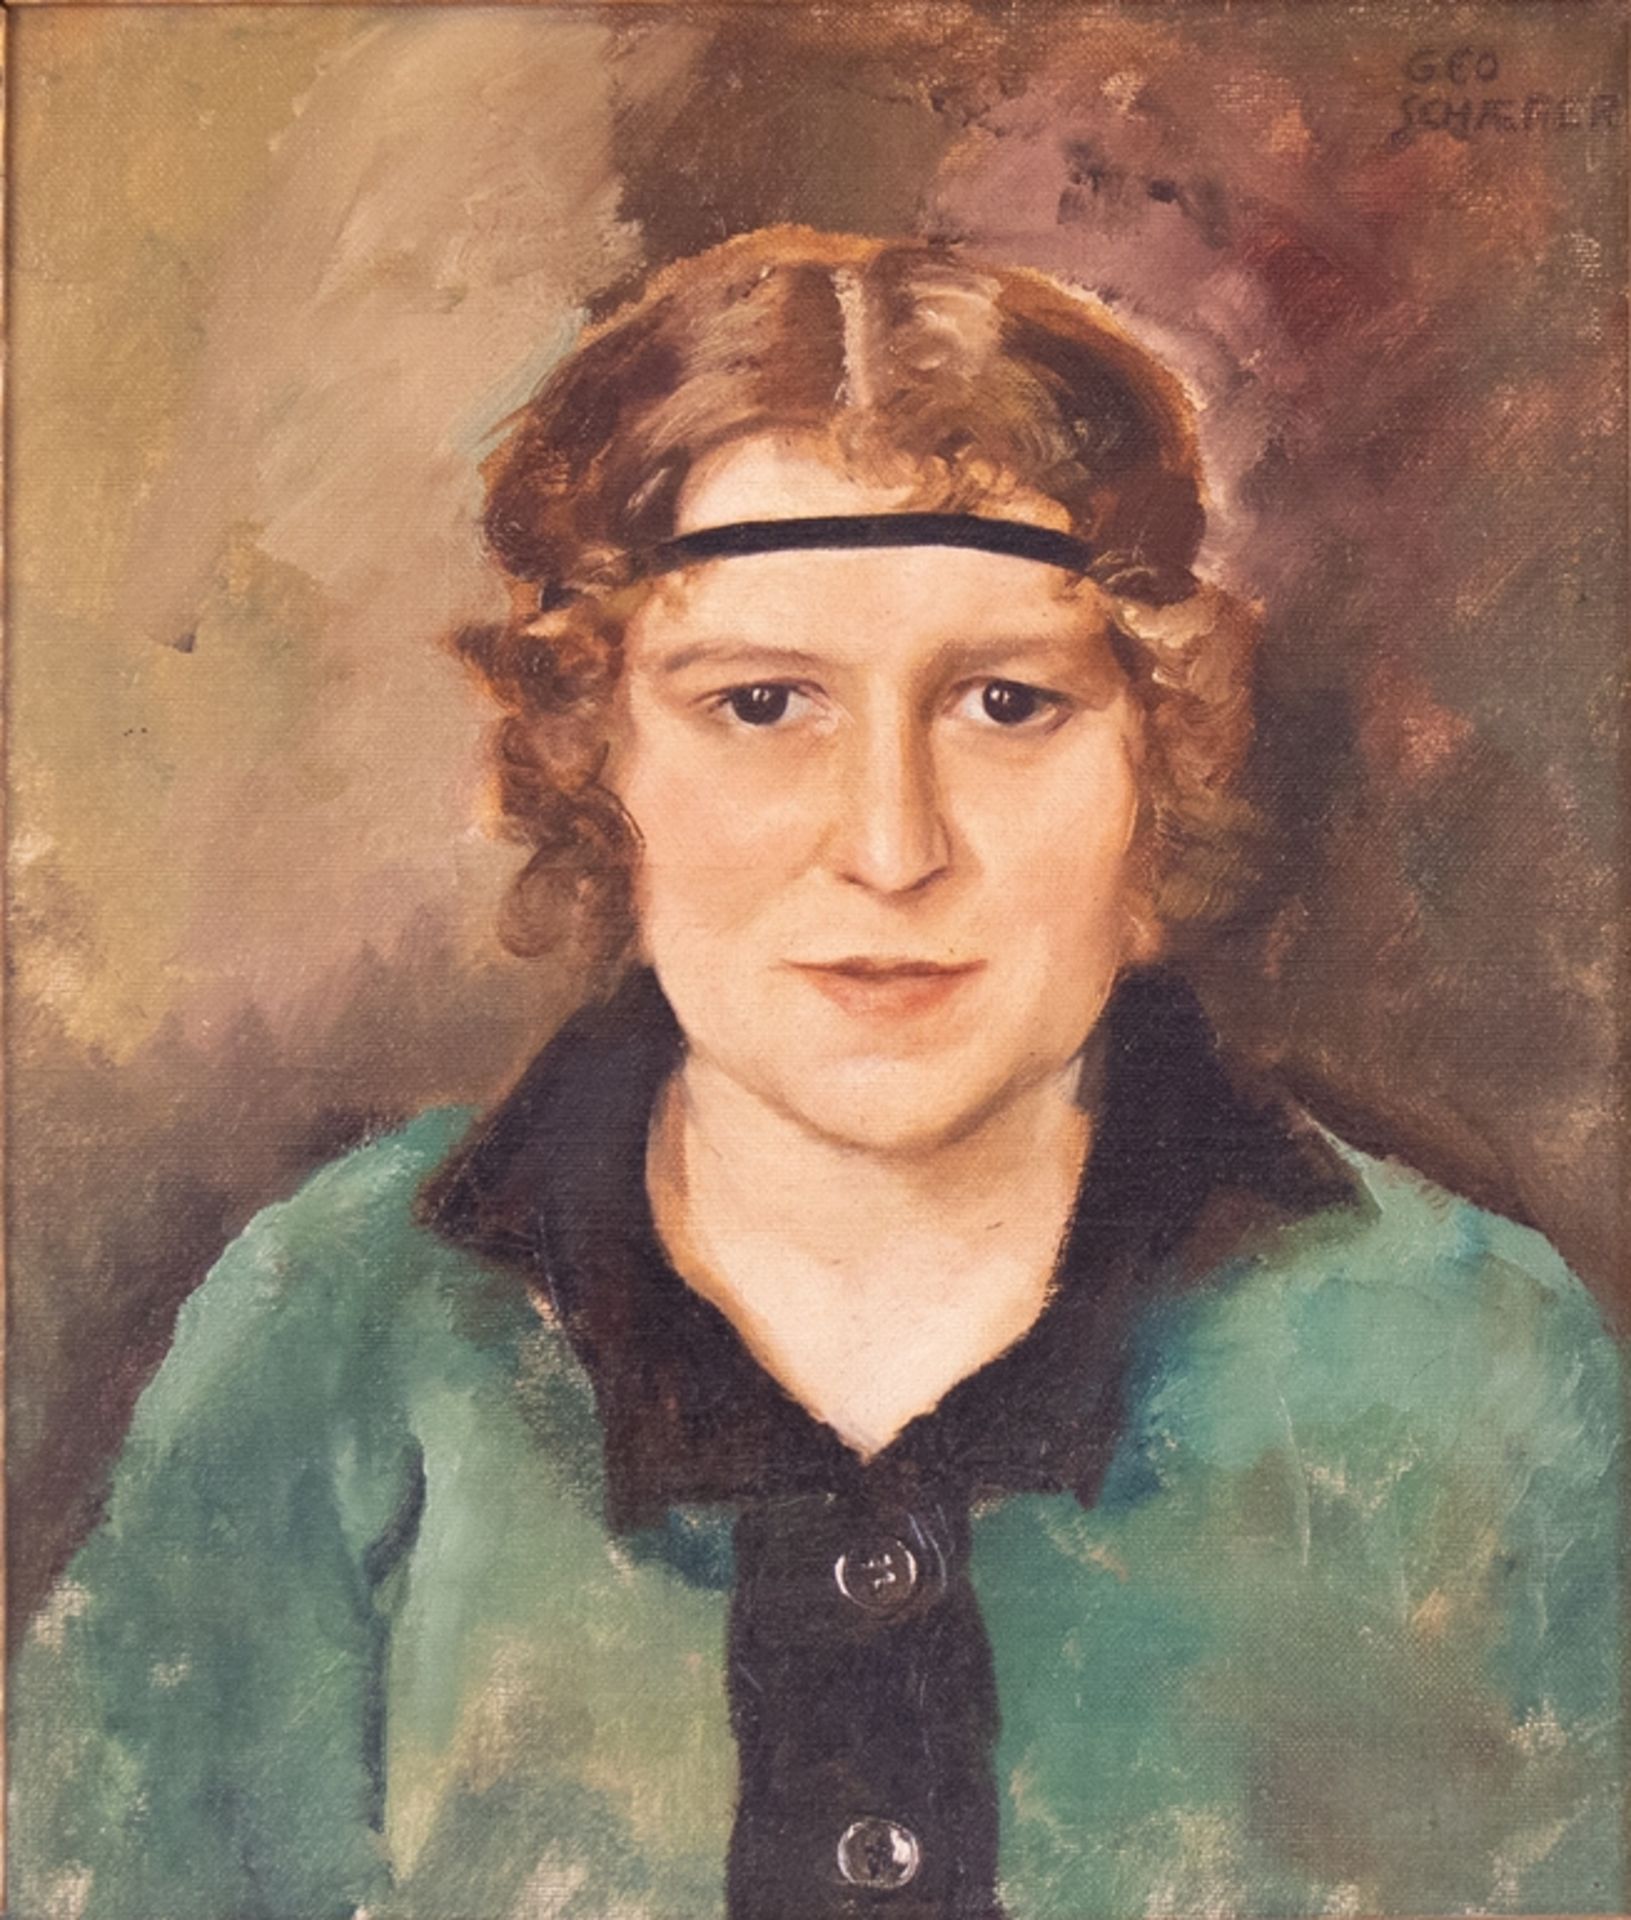 Geo Schäfer, Portrait of a lady, Aschaffenburg around 1920